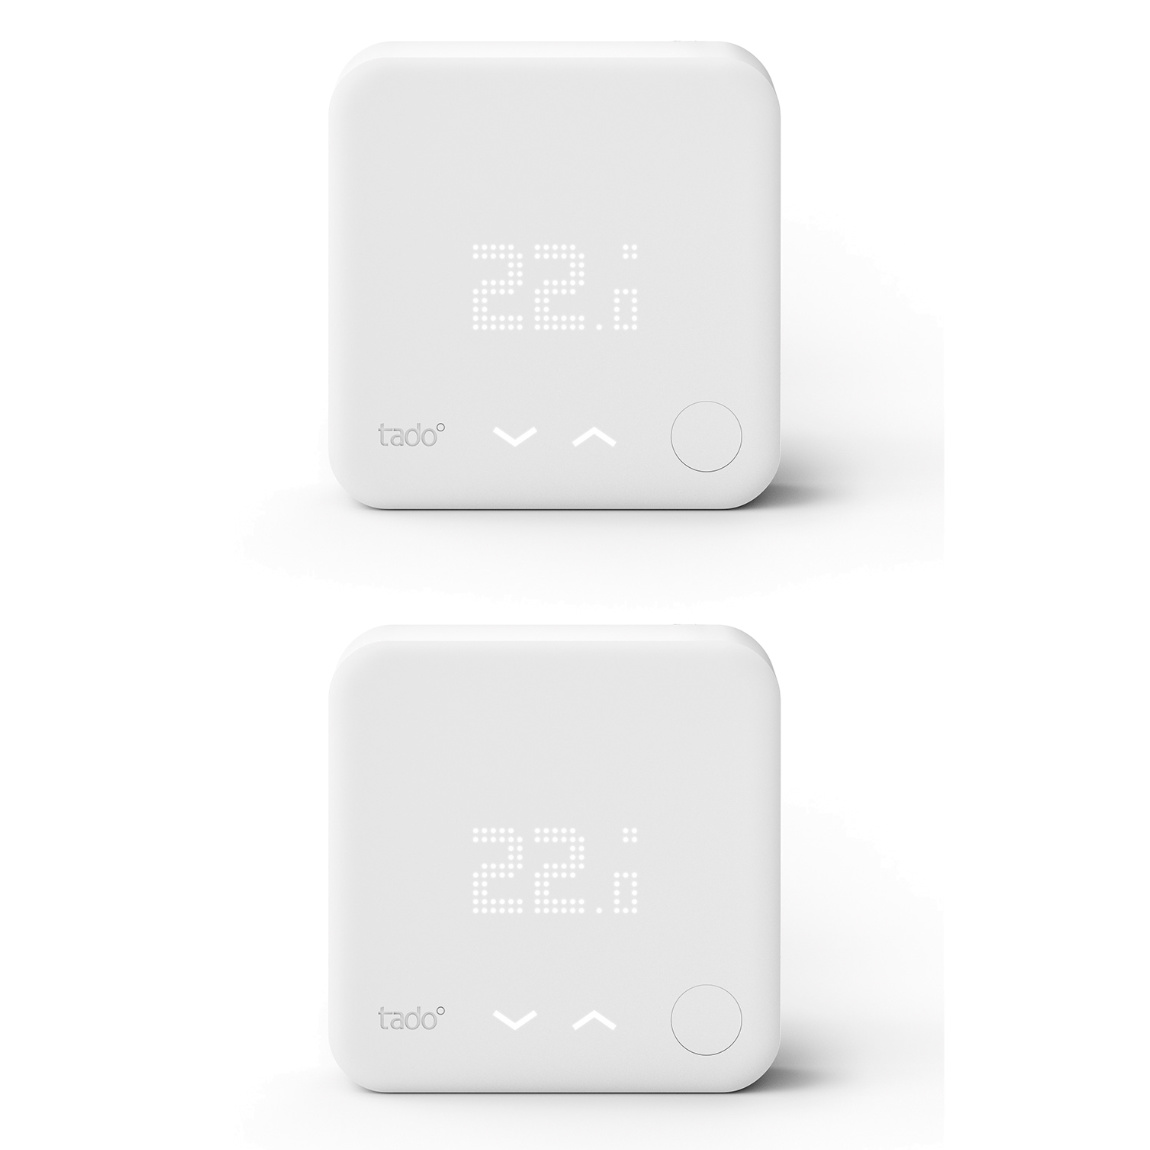 tado° Smartes Thermostat für Heizthermen und Fußbodenheizungen 2er-Set – Deal, Schnäppchen, sparen